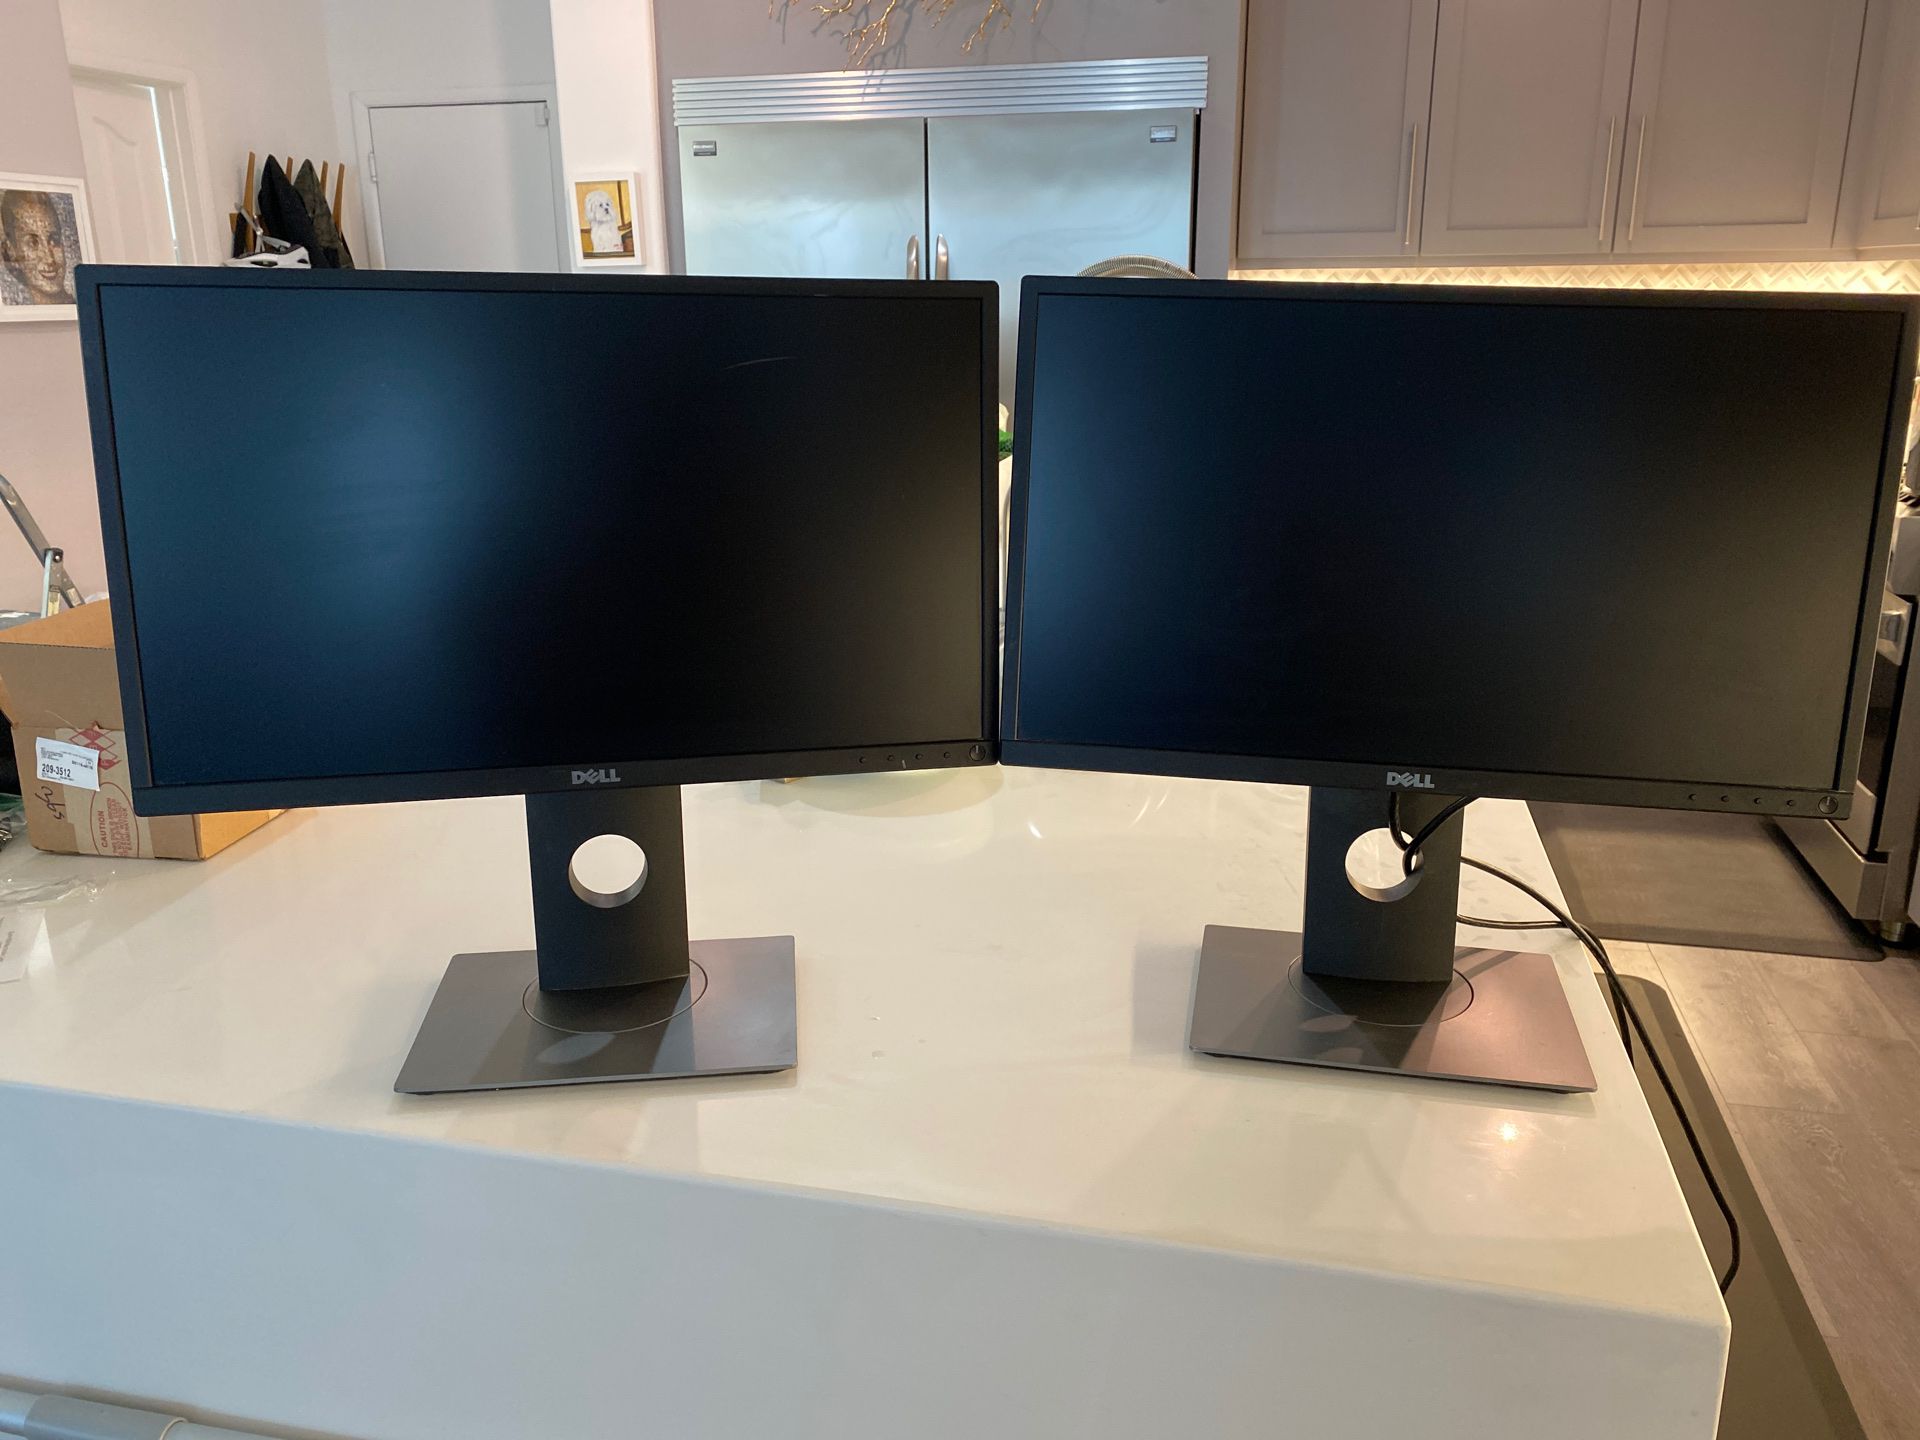 Dell desk top monitor 22” - double monitor $95